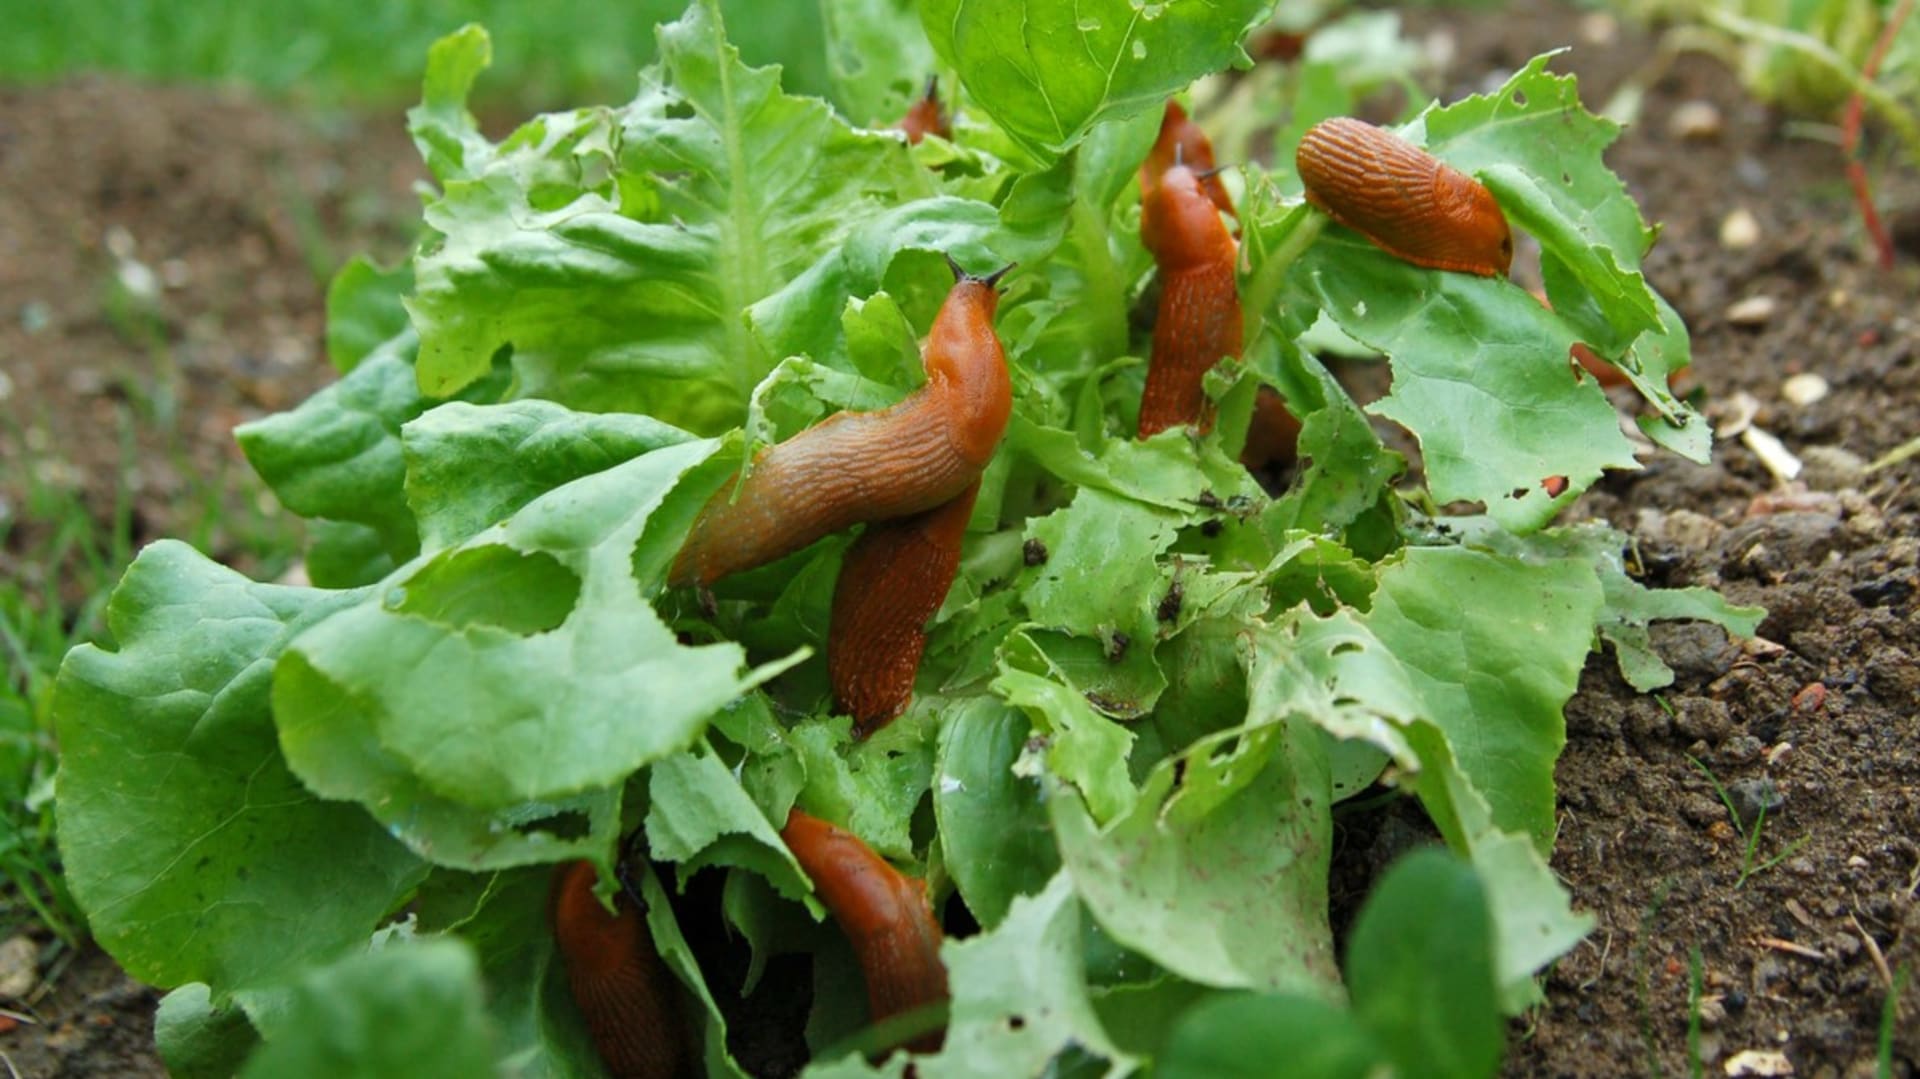 Hlávkový salát bývají oblíbenou pochoutkou slimáků a plzáků,  proto se kromě různých pastí a jiné ochrany vyplatí pěstovat v blízkosti salátu aromatické bylinky, které odrazují slimáky od hostiny